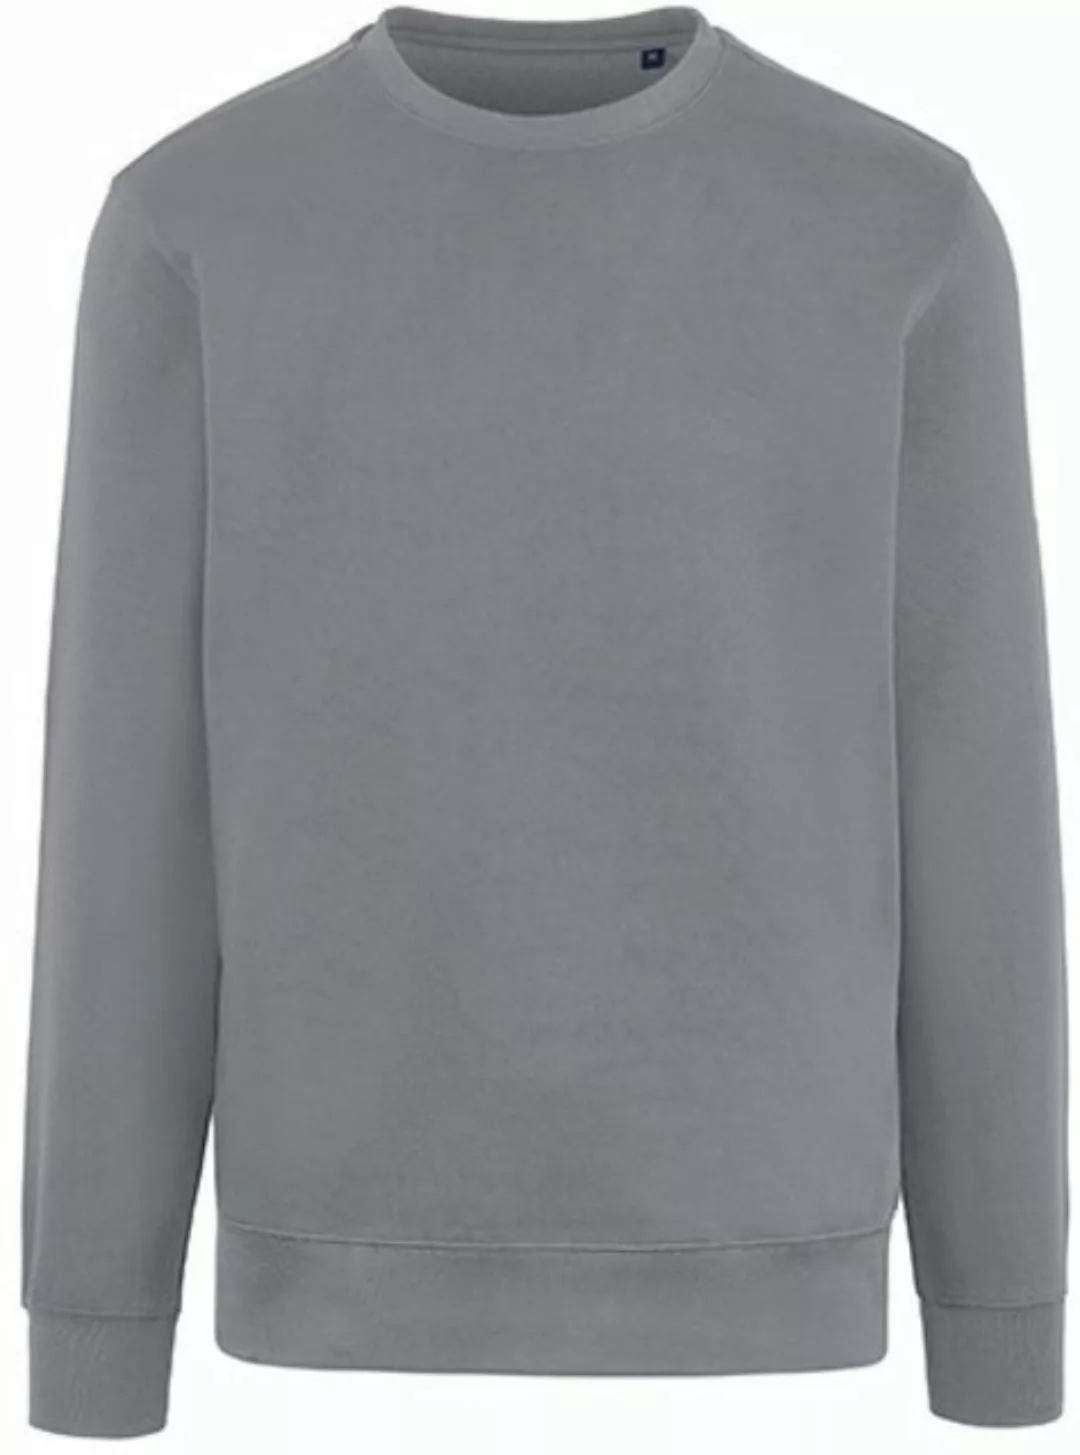 HRM Sweatshirt Herren Sweatshirt, BSCI zertifizierte Produktion günstig online kaufen